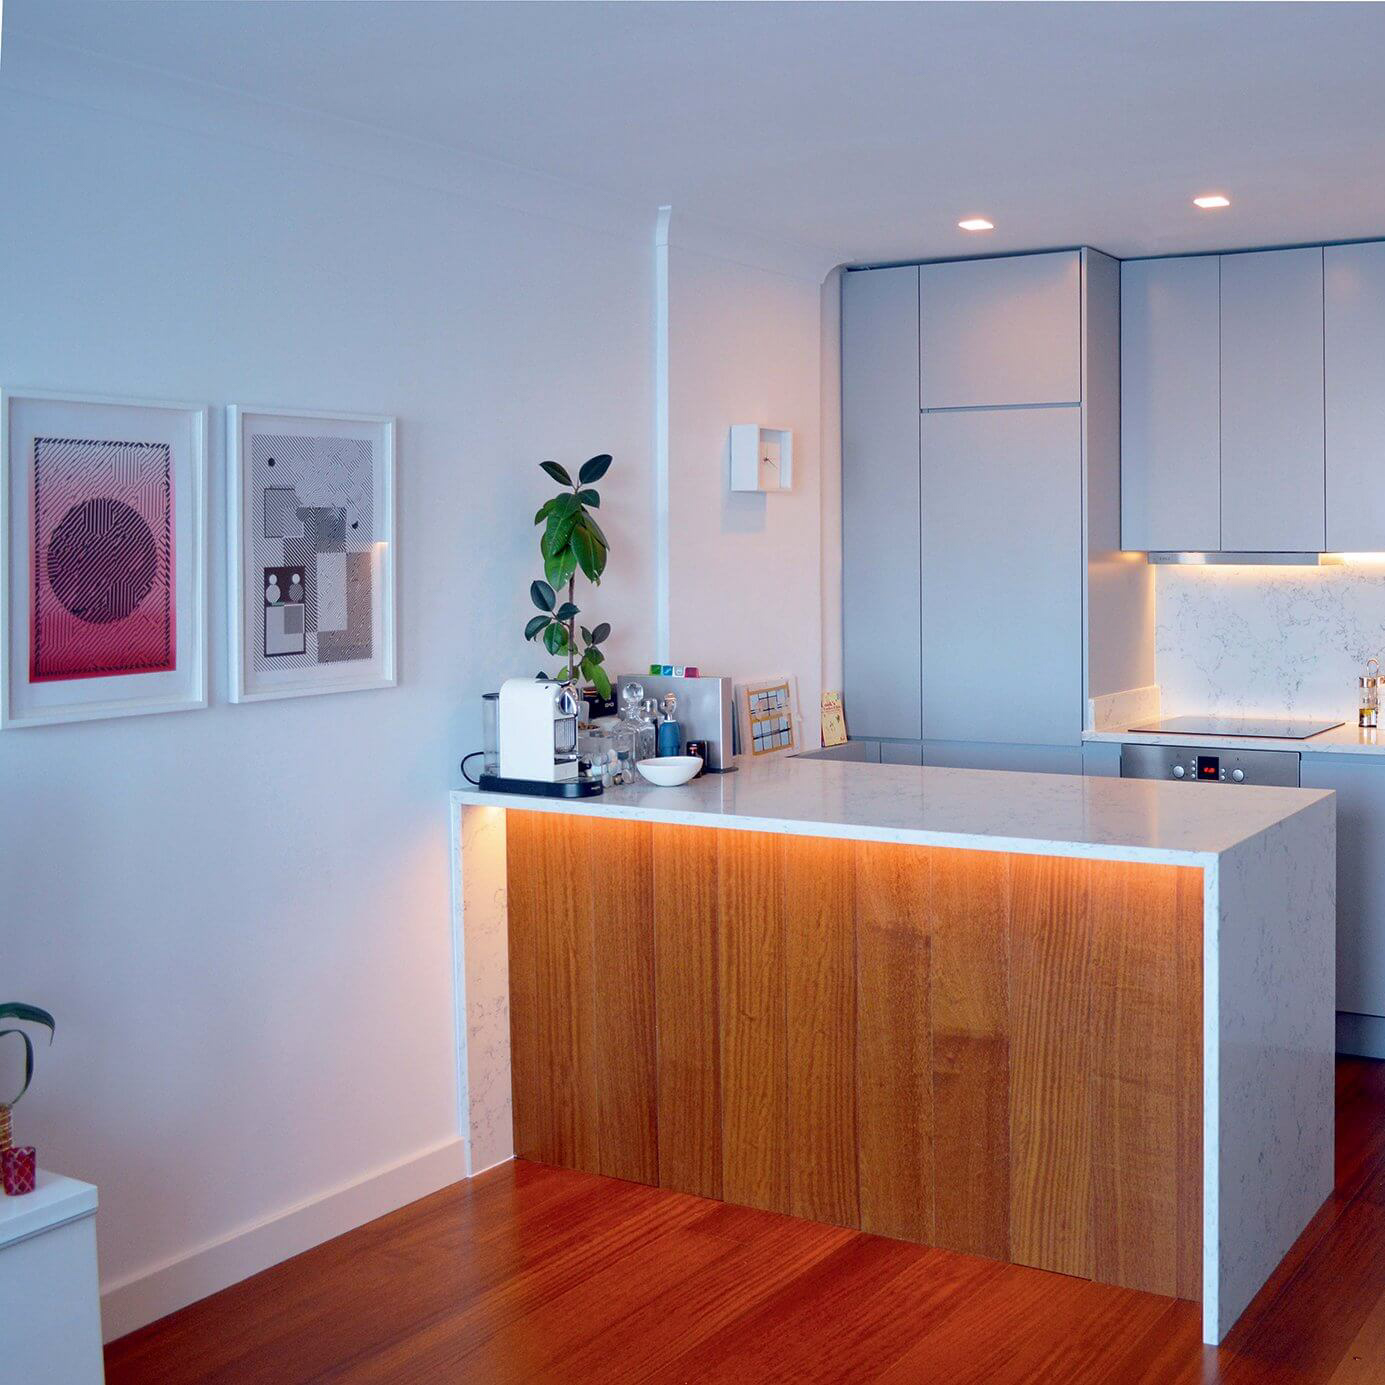 Vertigo Furniture: Innovative Designs for a Dizzyingly Beautiful Home